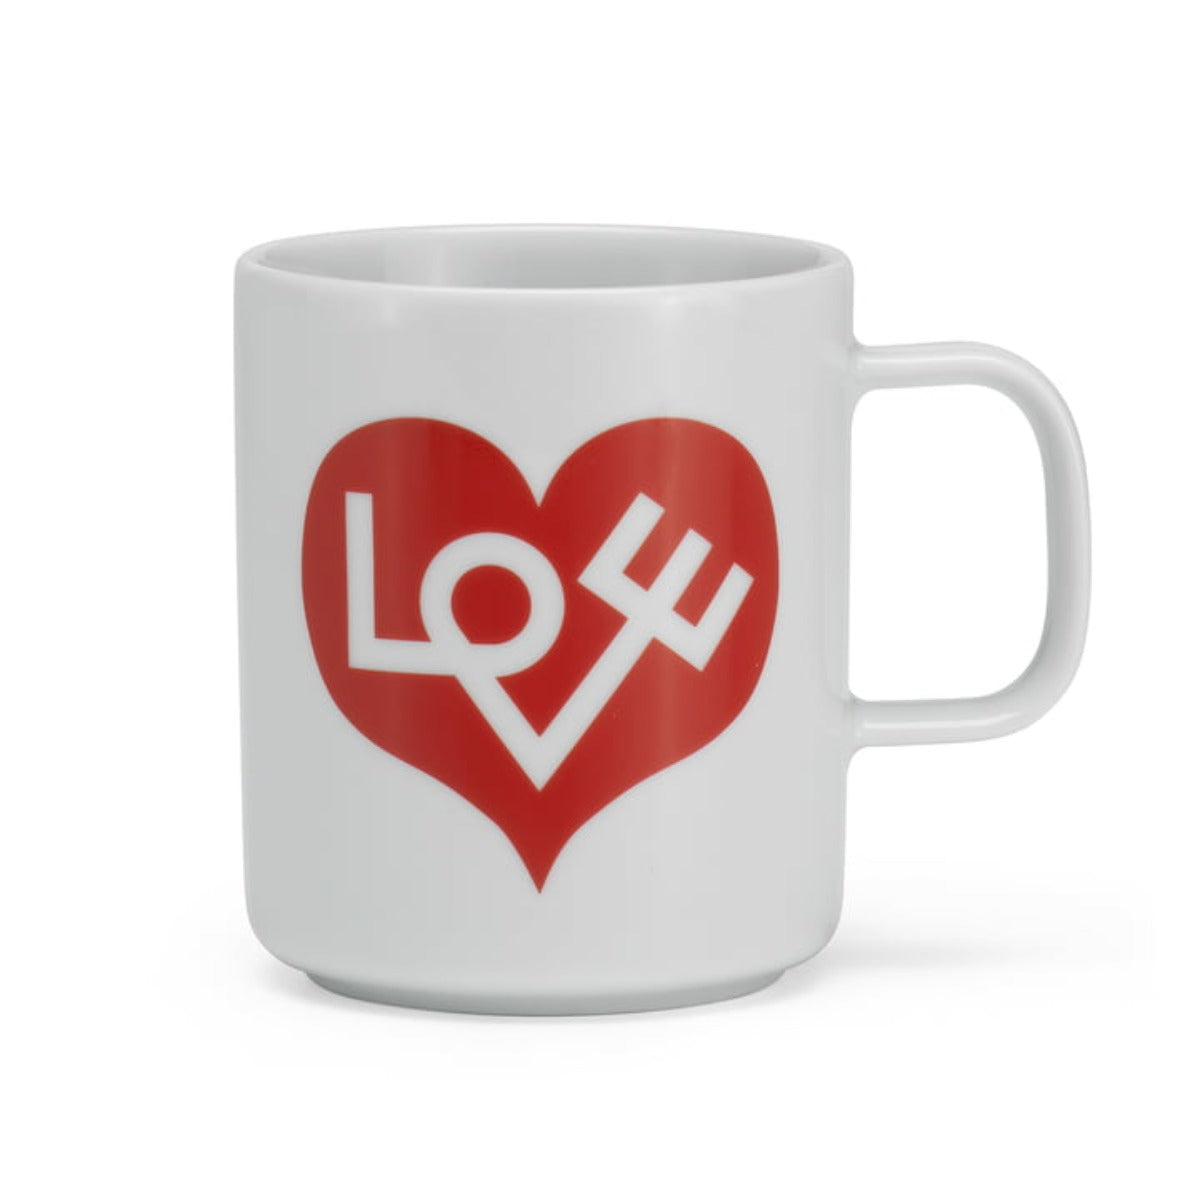 Girard Coffee Mug - Love Heart Crimson